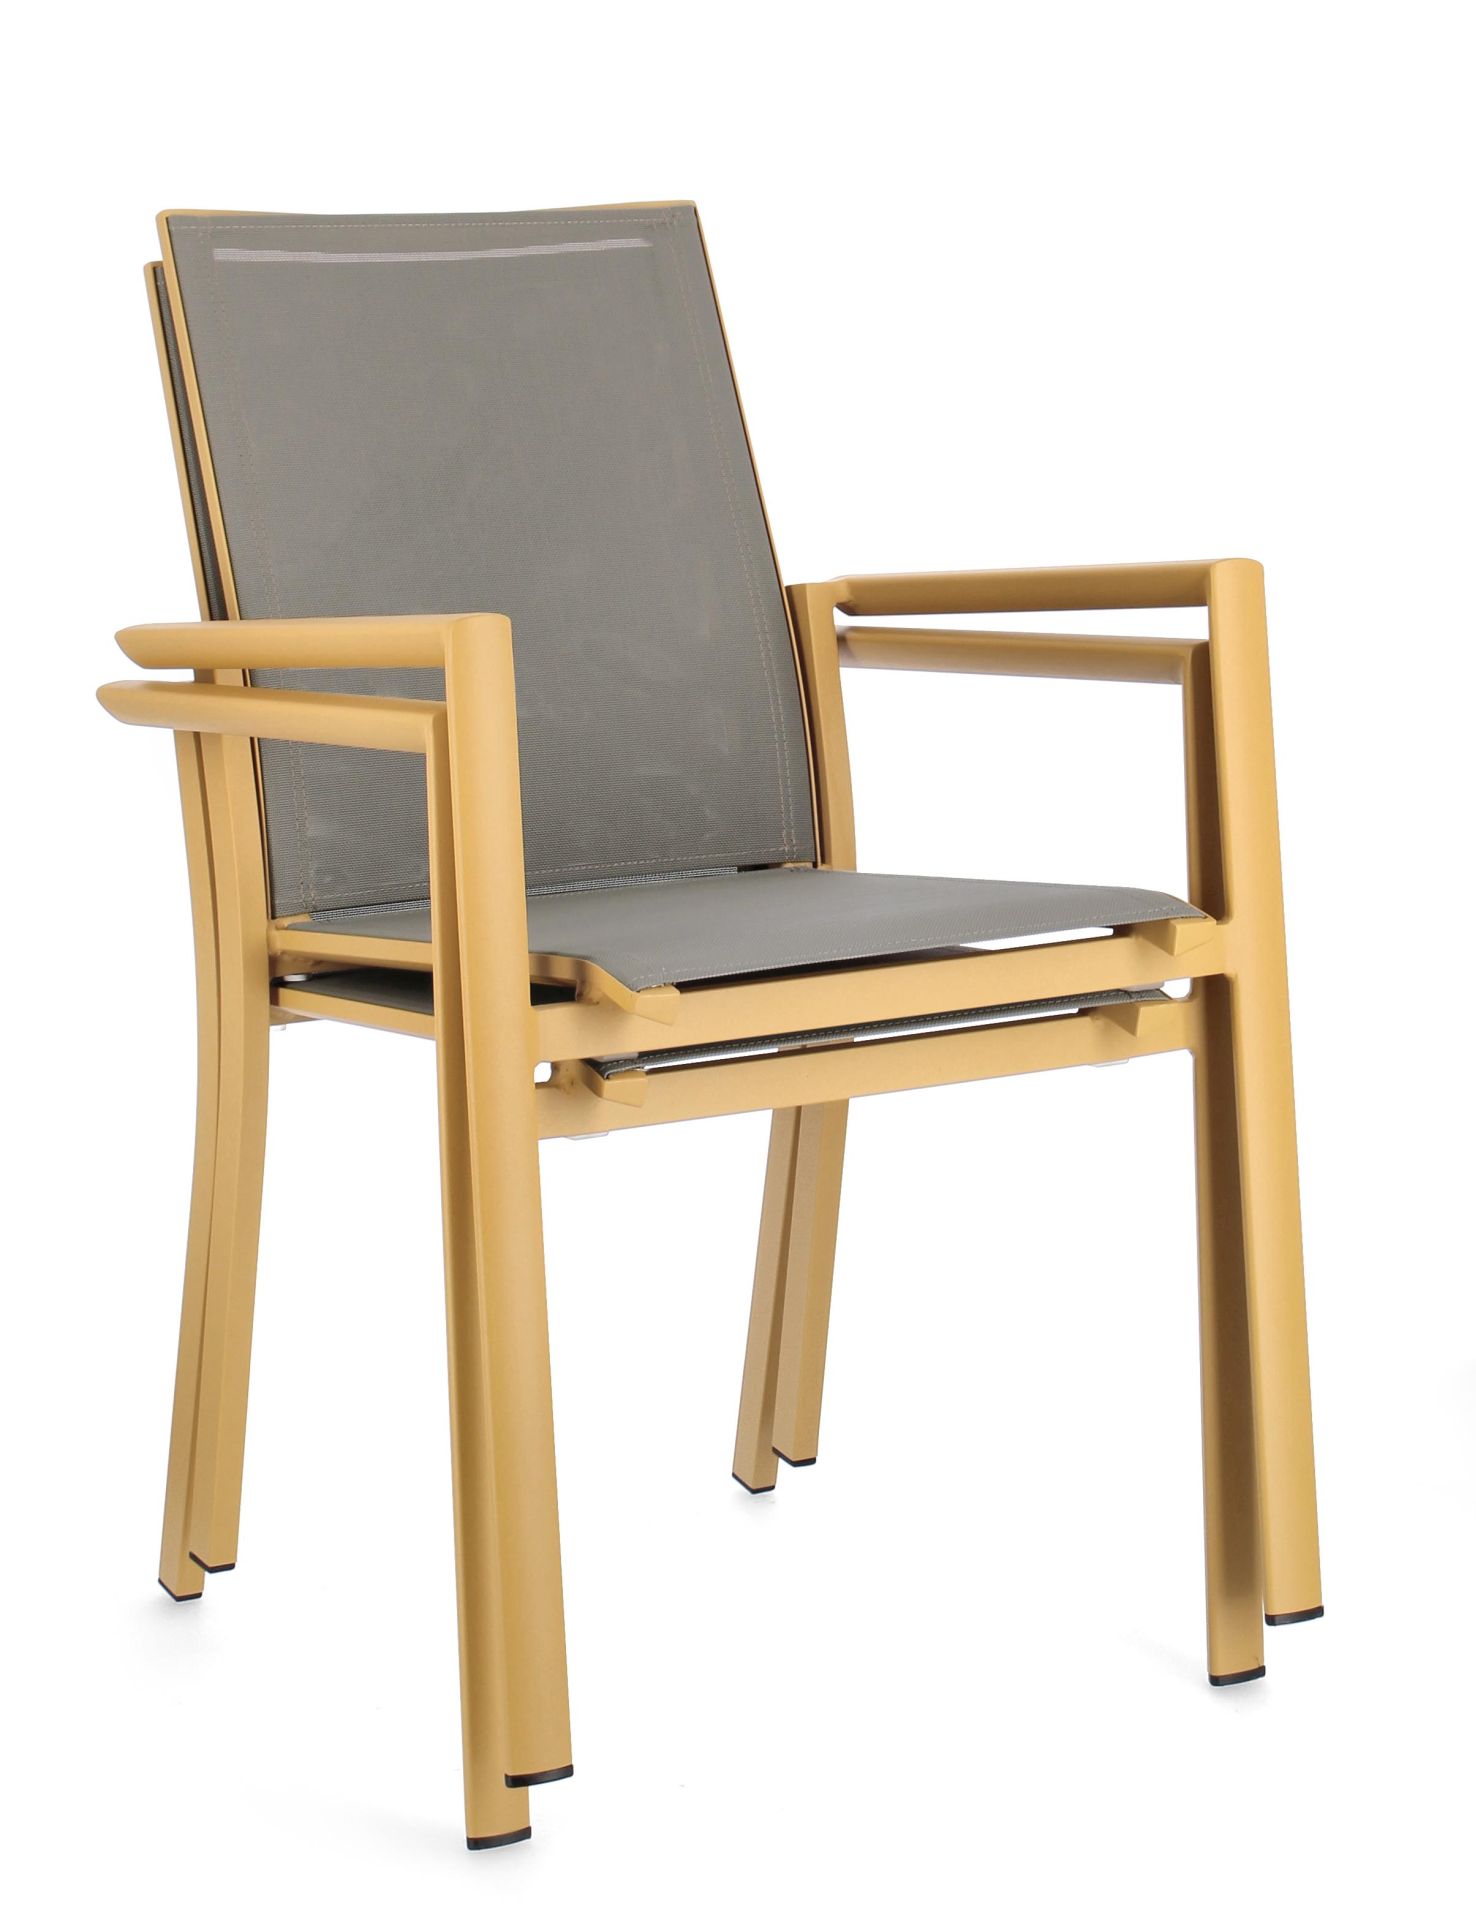 Der Gartenstuhl Konnor überzeugt mit seinem modernen Design. Gefertigt wurde er aus Textilene, welcher einen grauen Farbton besitzt. Das Gestell ist aus Aluminium und hat eine gelbe Farbe. Der Stuhl verfügt über eine Sitzhöhe von 45 cm und ist für den Out